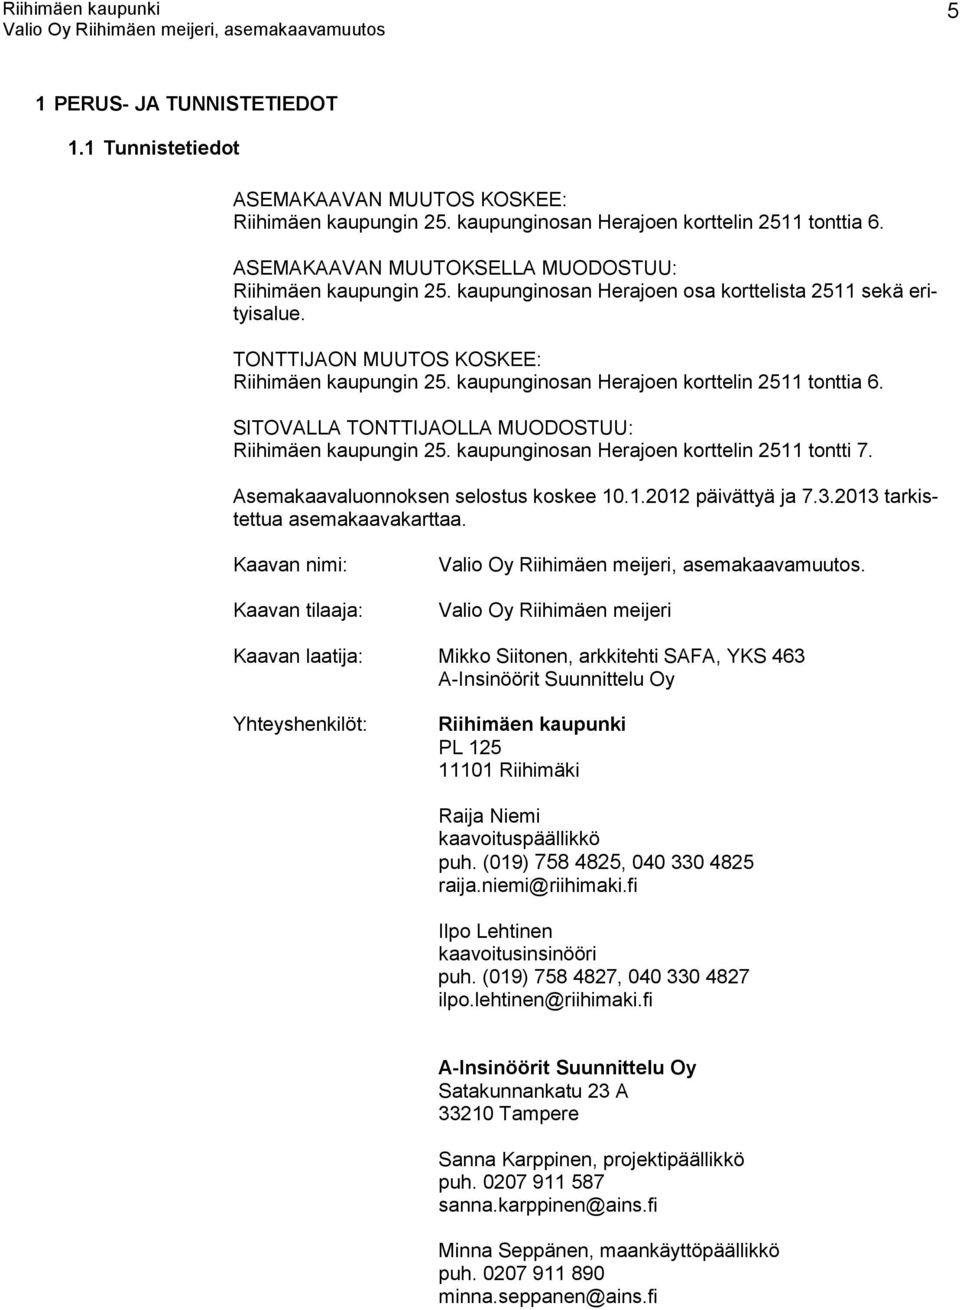 kaupunginosan Herajoen korttelin 2511 tonttia 6. SITOVALLA TONTTIJAOLLA MUODOSTUU: Riihimäen kaupungin 25. kaupunginosan Herajoen korttelin 2511 tontti 7. Asemakaavaluonnoksen selostus koskee 10.1.2012 päivättyä ja 7.